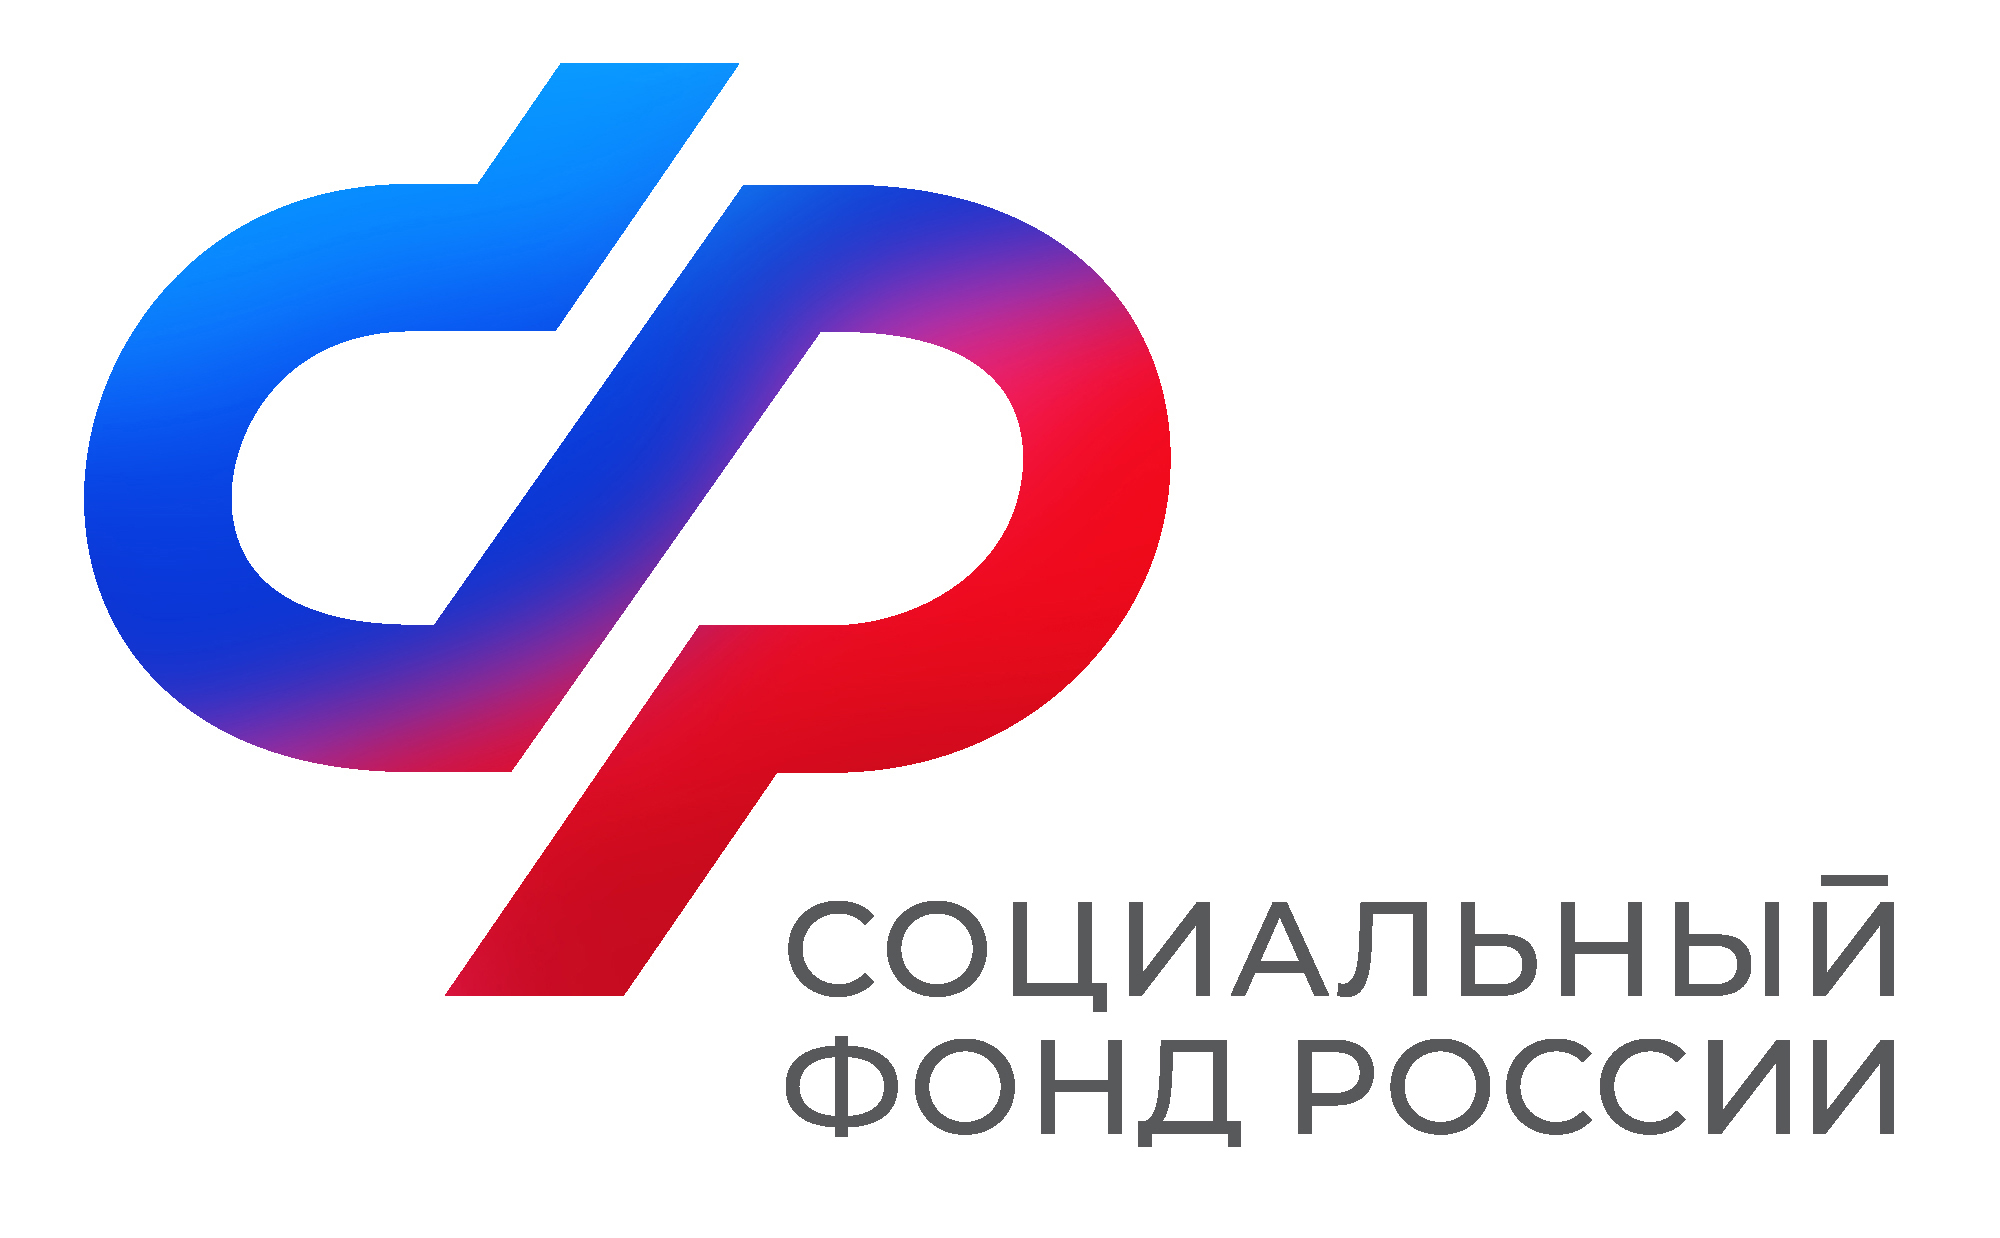 Воронежские семьи получили более 4 тысяч сертификатов на материнский (семейный) капитал в проактивном режиме c начала года.